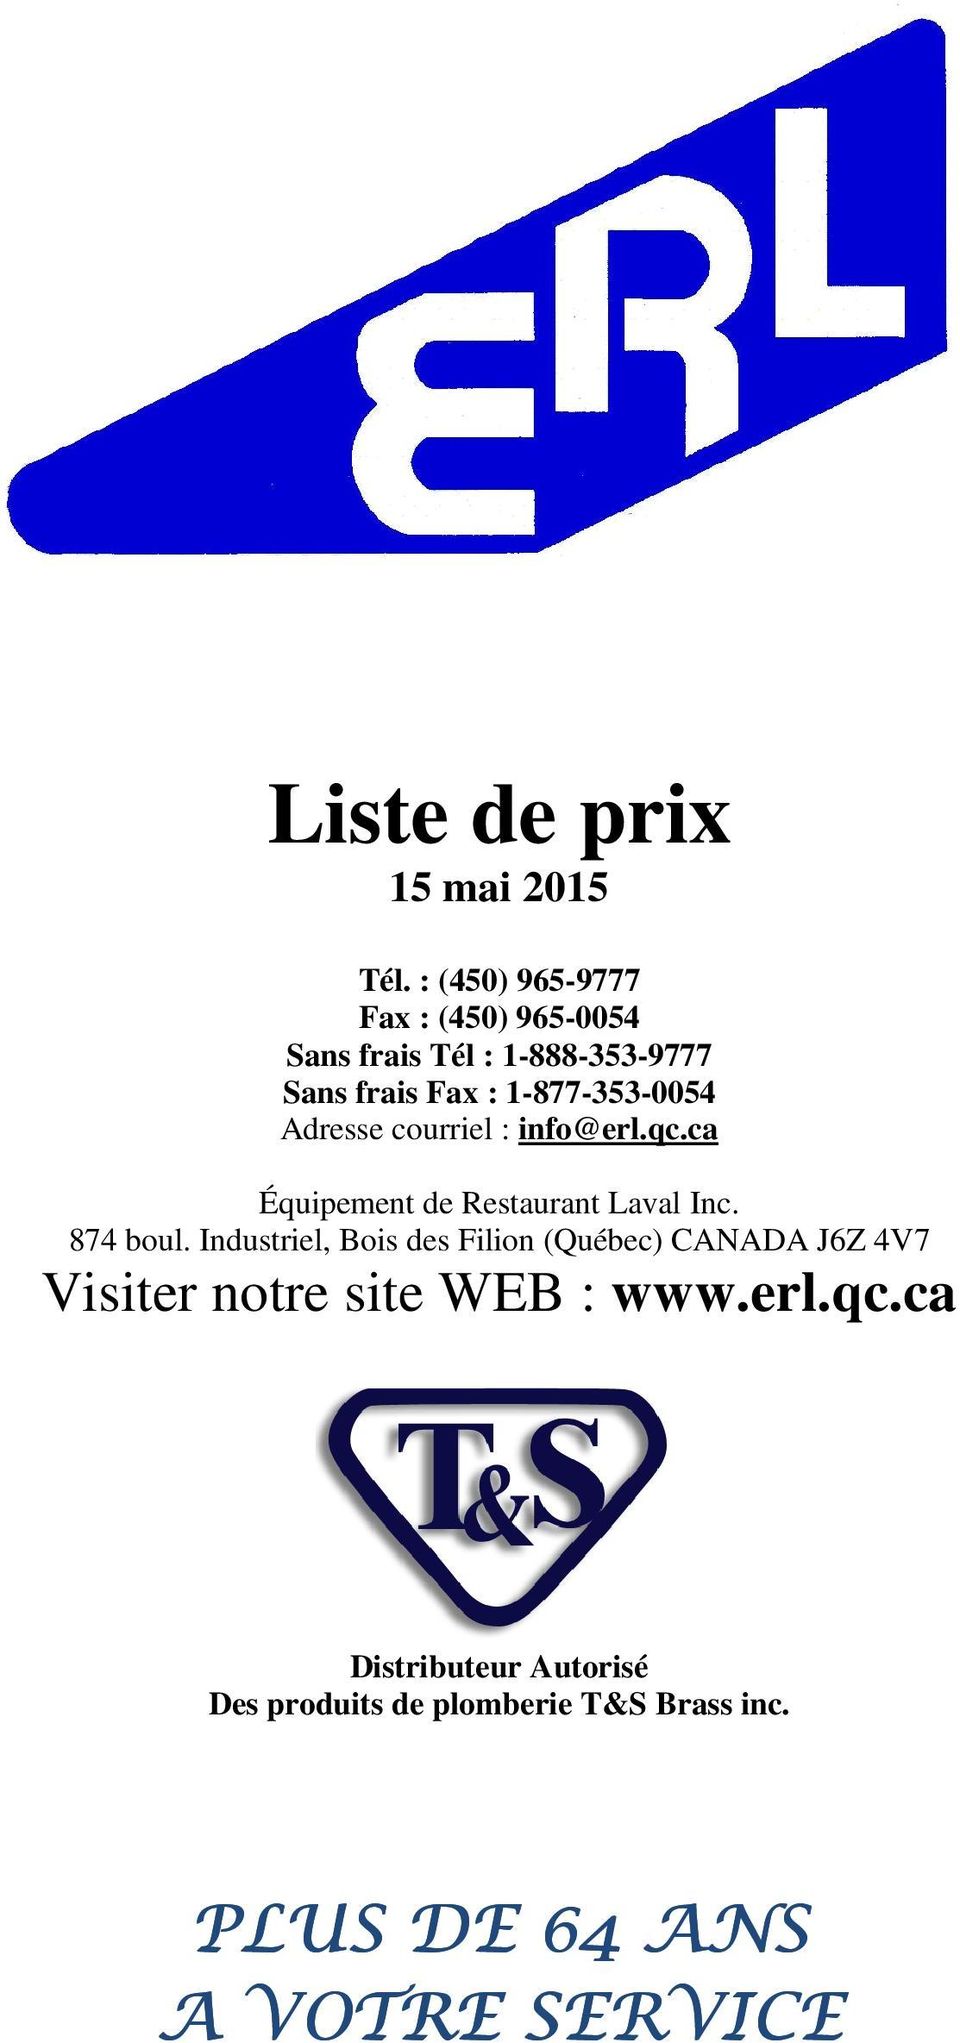 1-877-353-0054 Adresse courriel : info@erl.qc.ca Équipement de Restaurant Laval Inc. 874 boul.